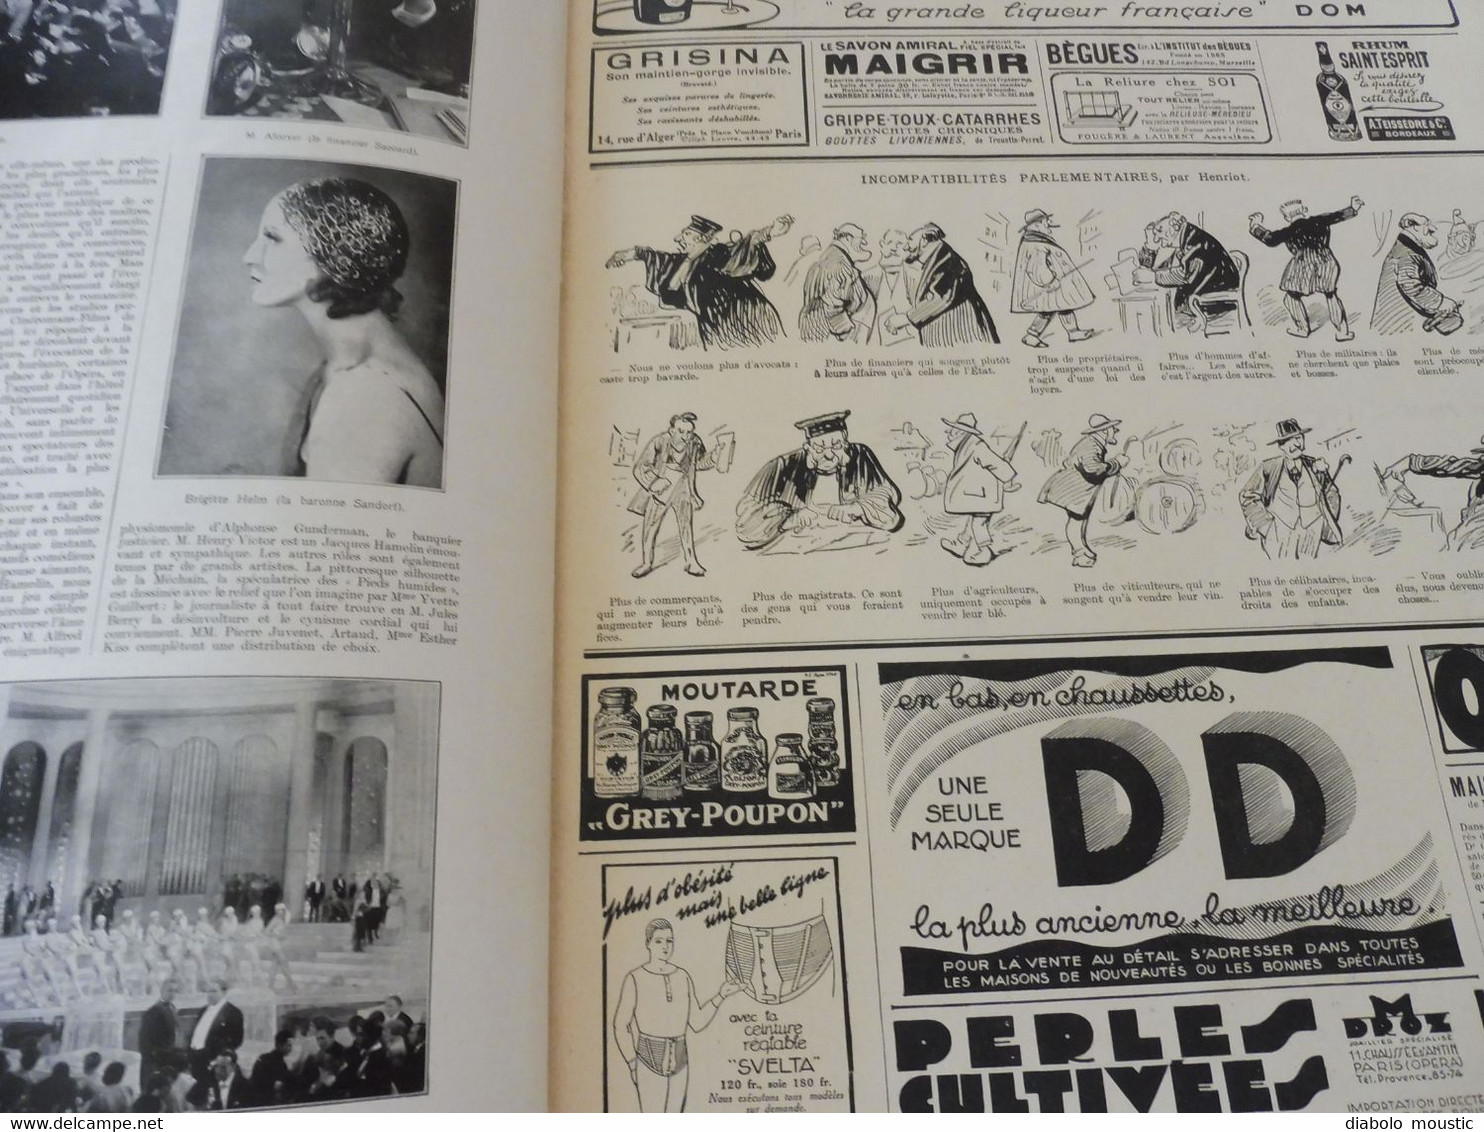 1929 : Chine; Les souverains belges aux sports d'hiver ; Exposition de la RELIURE; Ameublement; Armée du Salut; etc